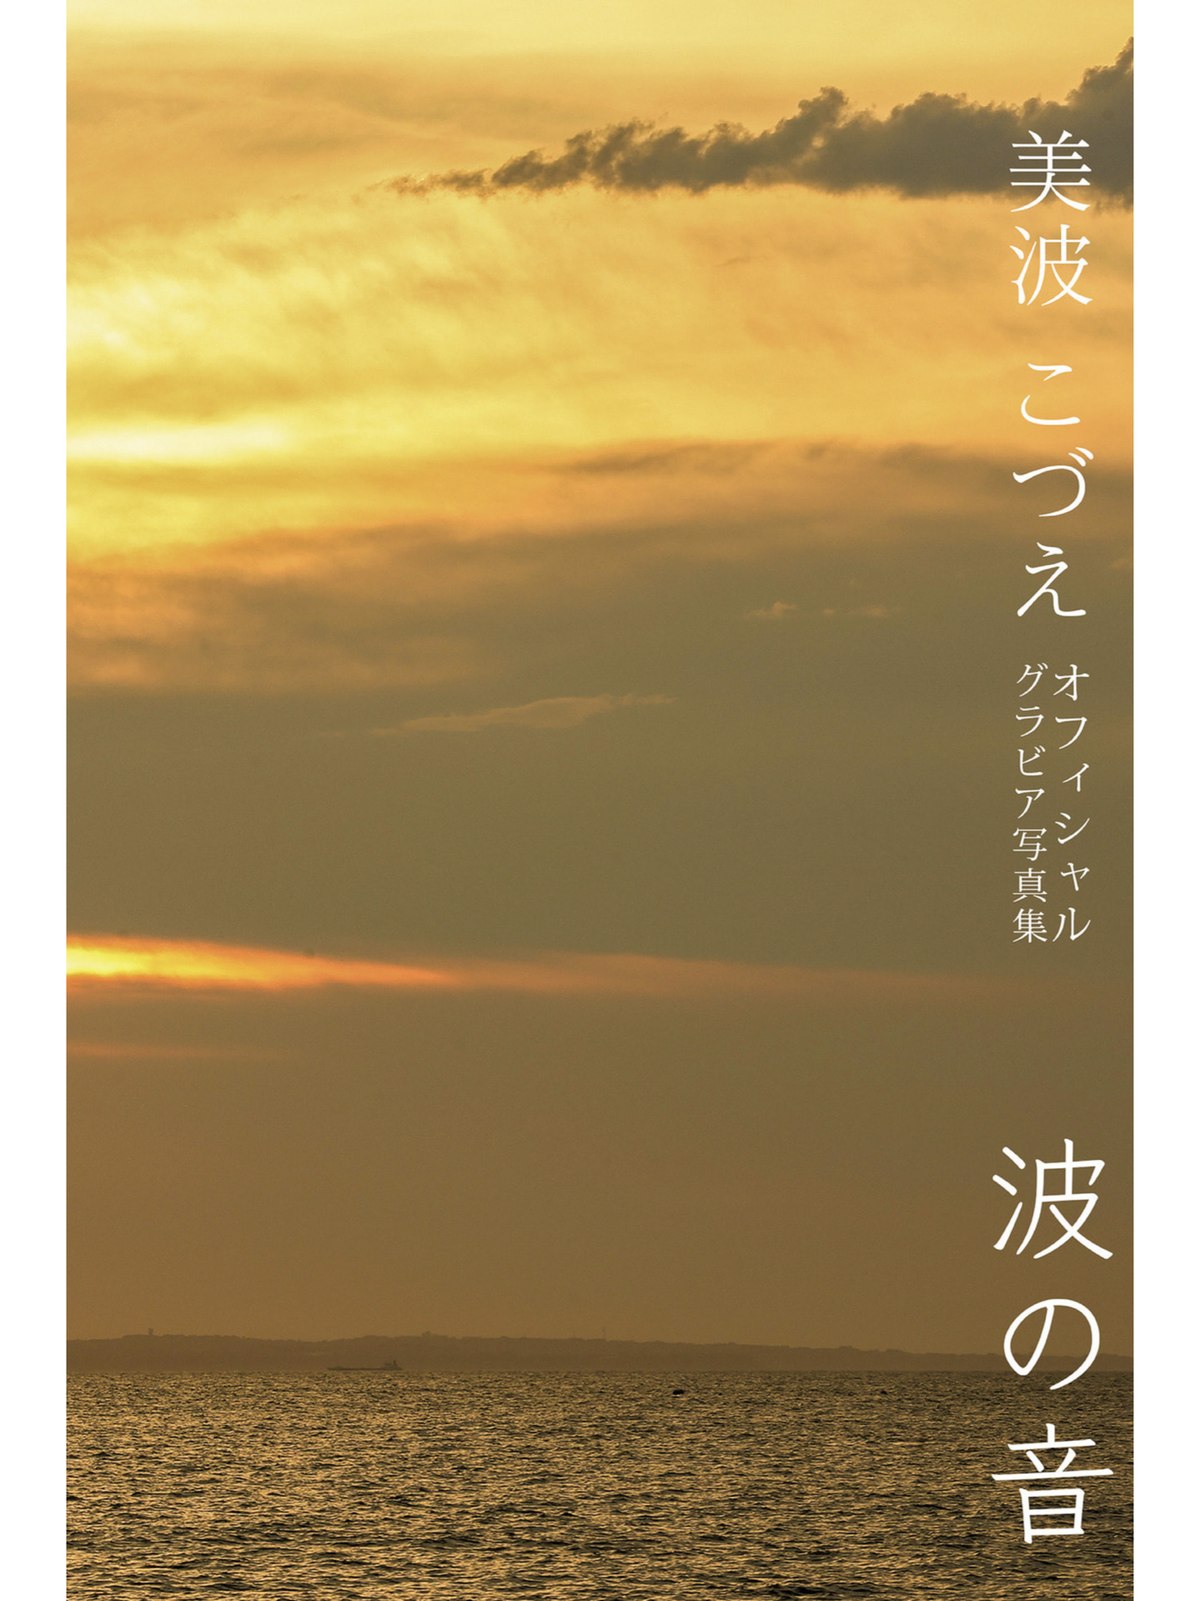 Photobook Kozue Minami 美波こづえ Sound Of Waves 0051 7254902385.jpg